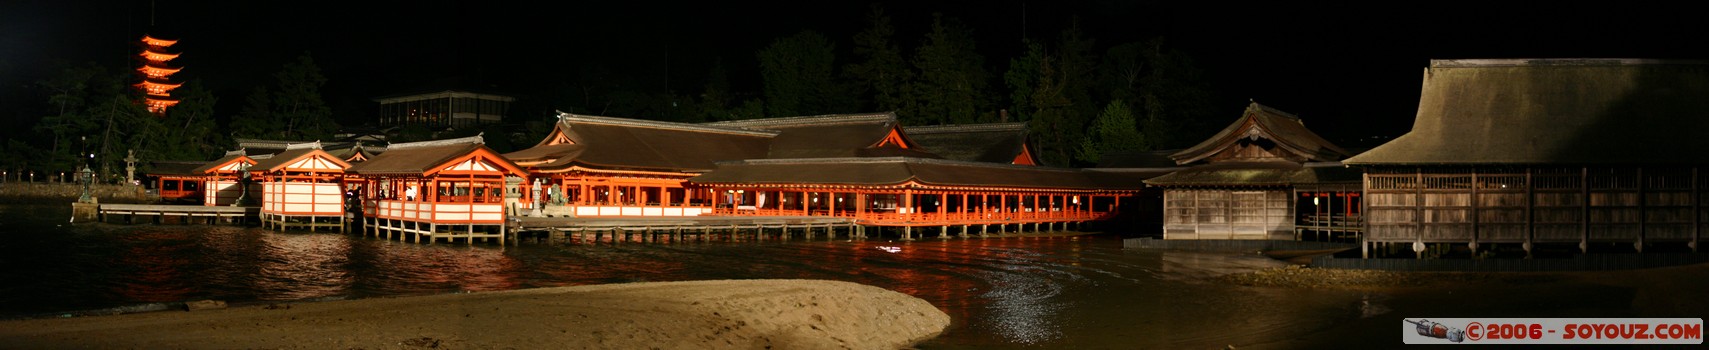 Itsukushima Shrine by night
vue panoramique
Mots-clés: Nuit patrimoine unesco